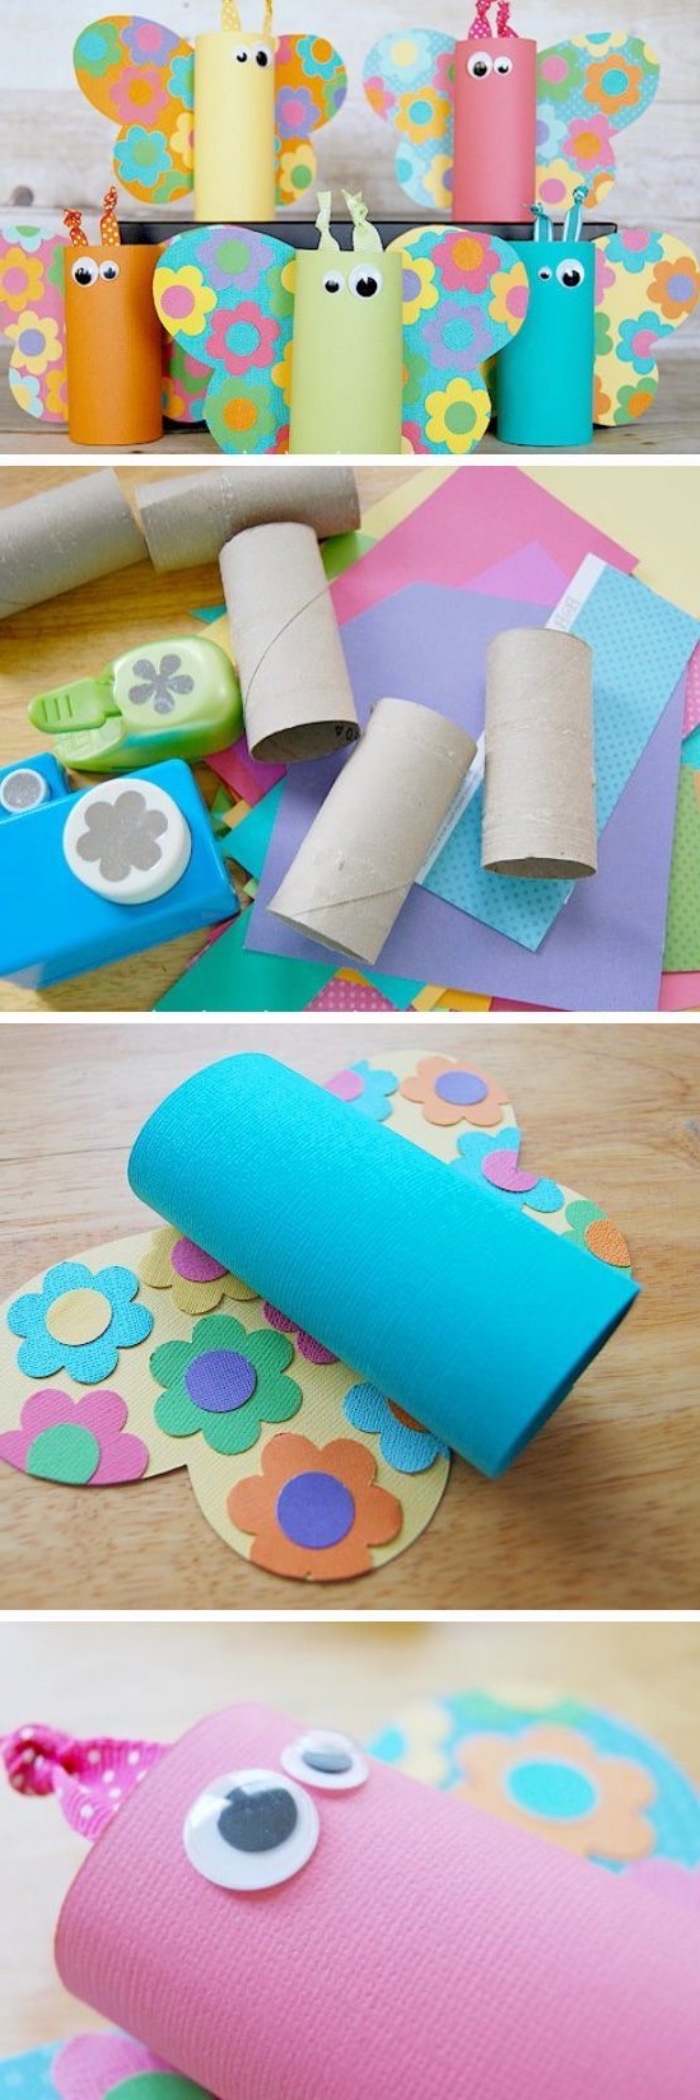 manualidades con tubos de cartón reciclados, divertidas propuestas de manualidades sencillas para niñosy adultos